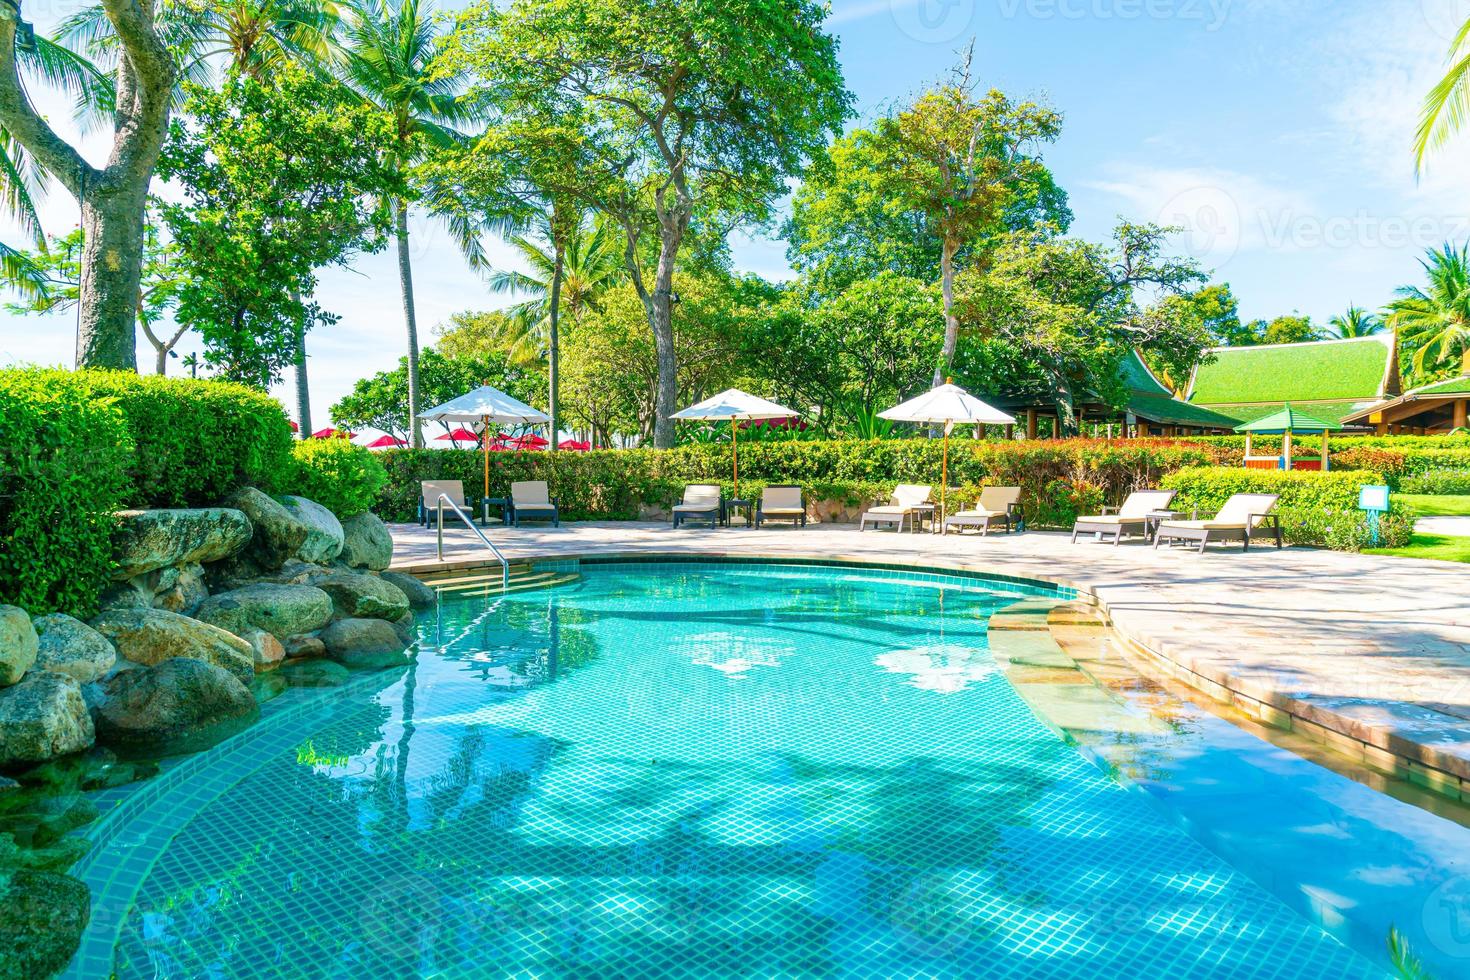 schöner Sonnenschirm und Stuhl um den Pool im Hotel und Resort? foto